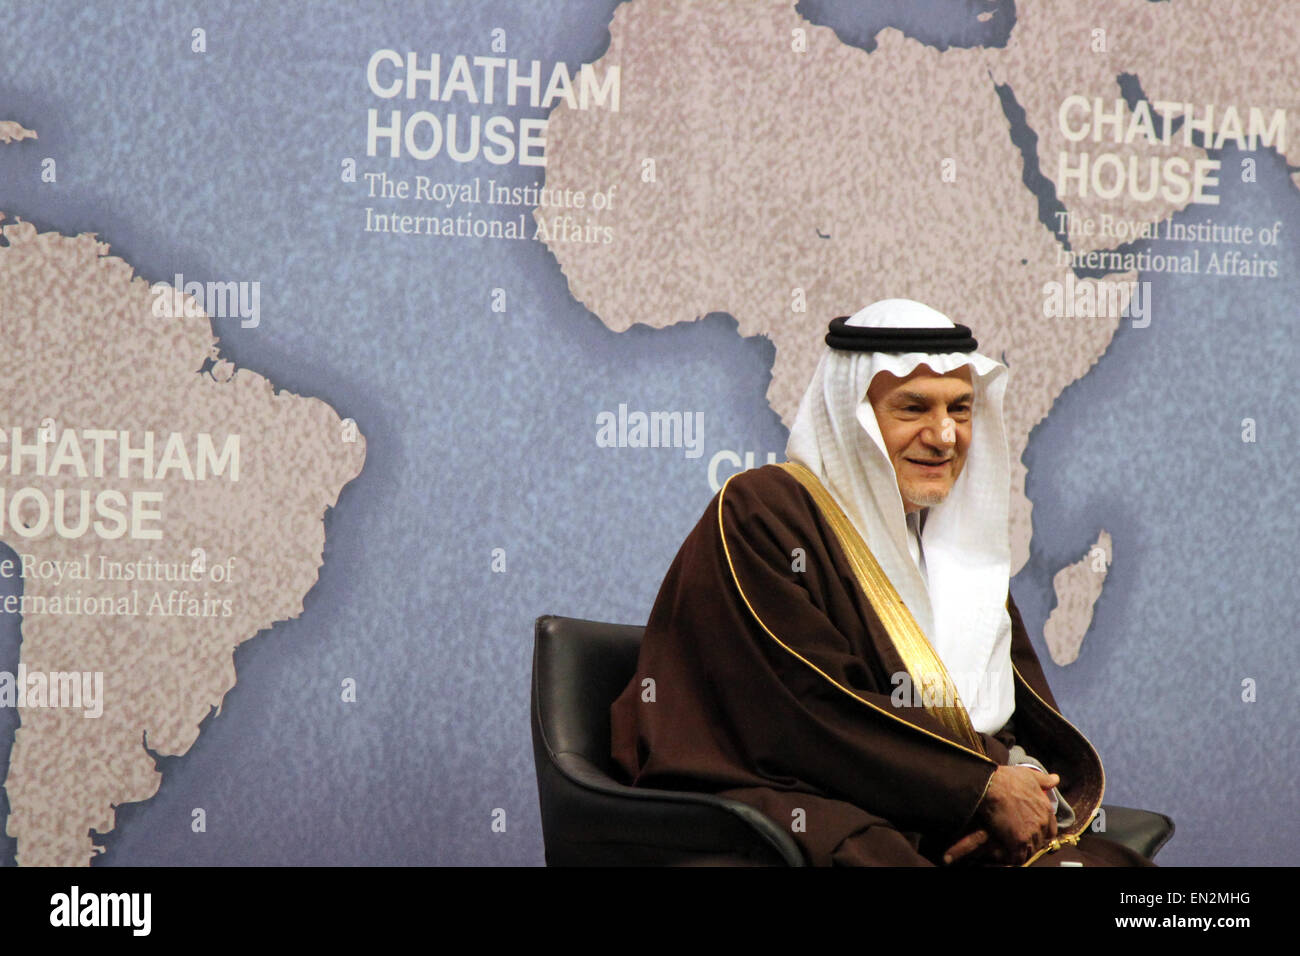 El veterano diplomático saudí príncipe Turki bin Faisal Al Saud, hablando en el think tank Chatham House en Londres, Reino Unido el 18 de marzo de 2015 Foto de stock